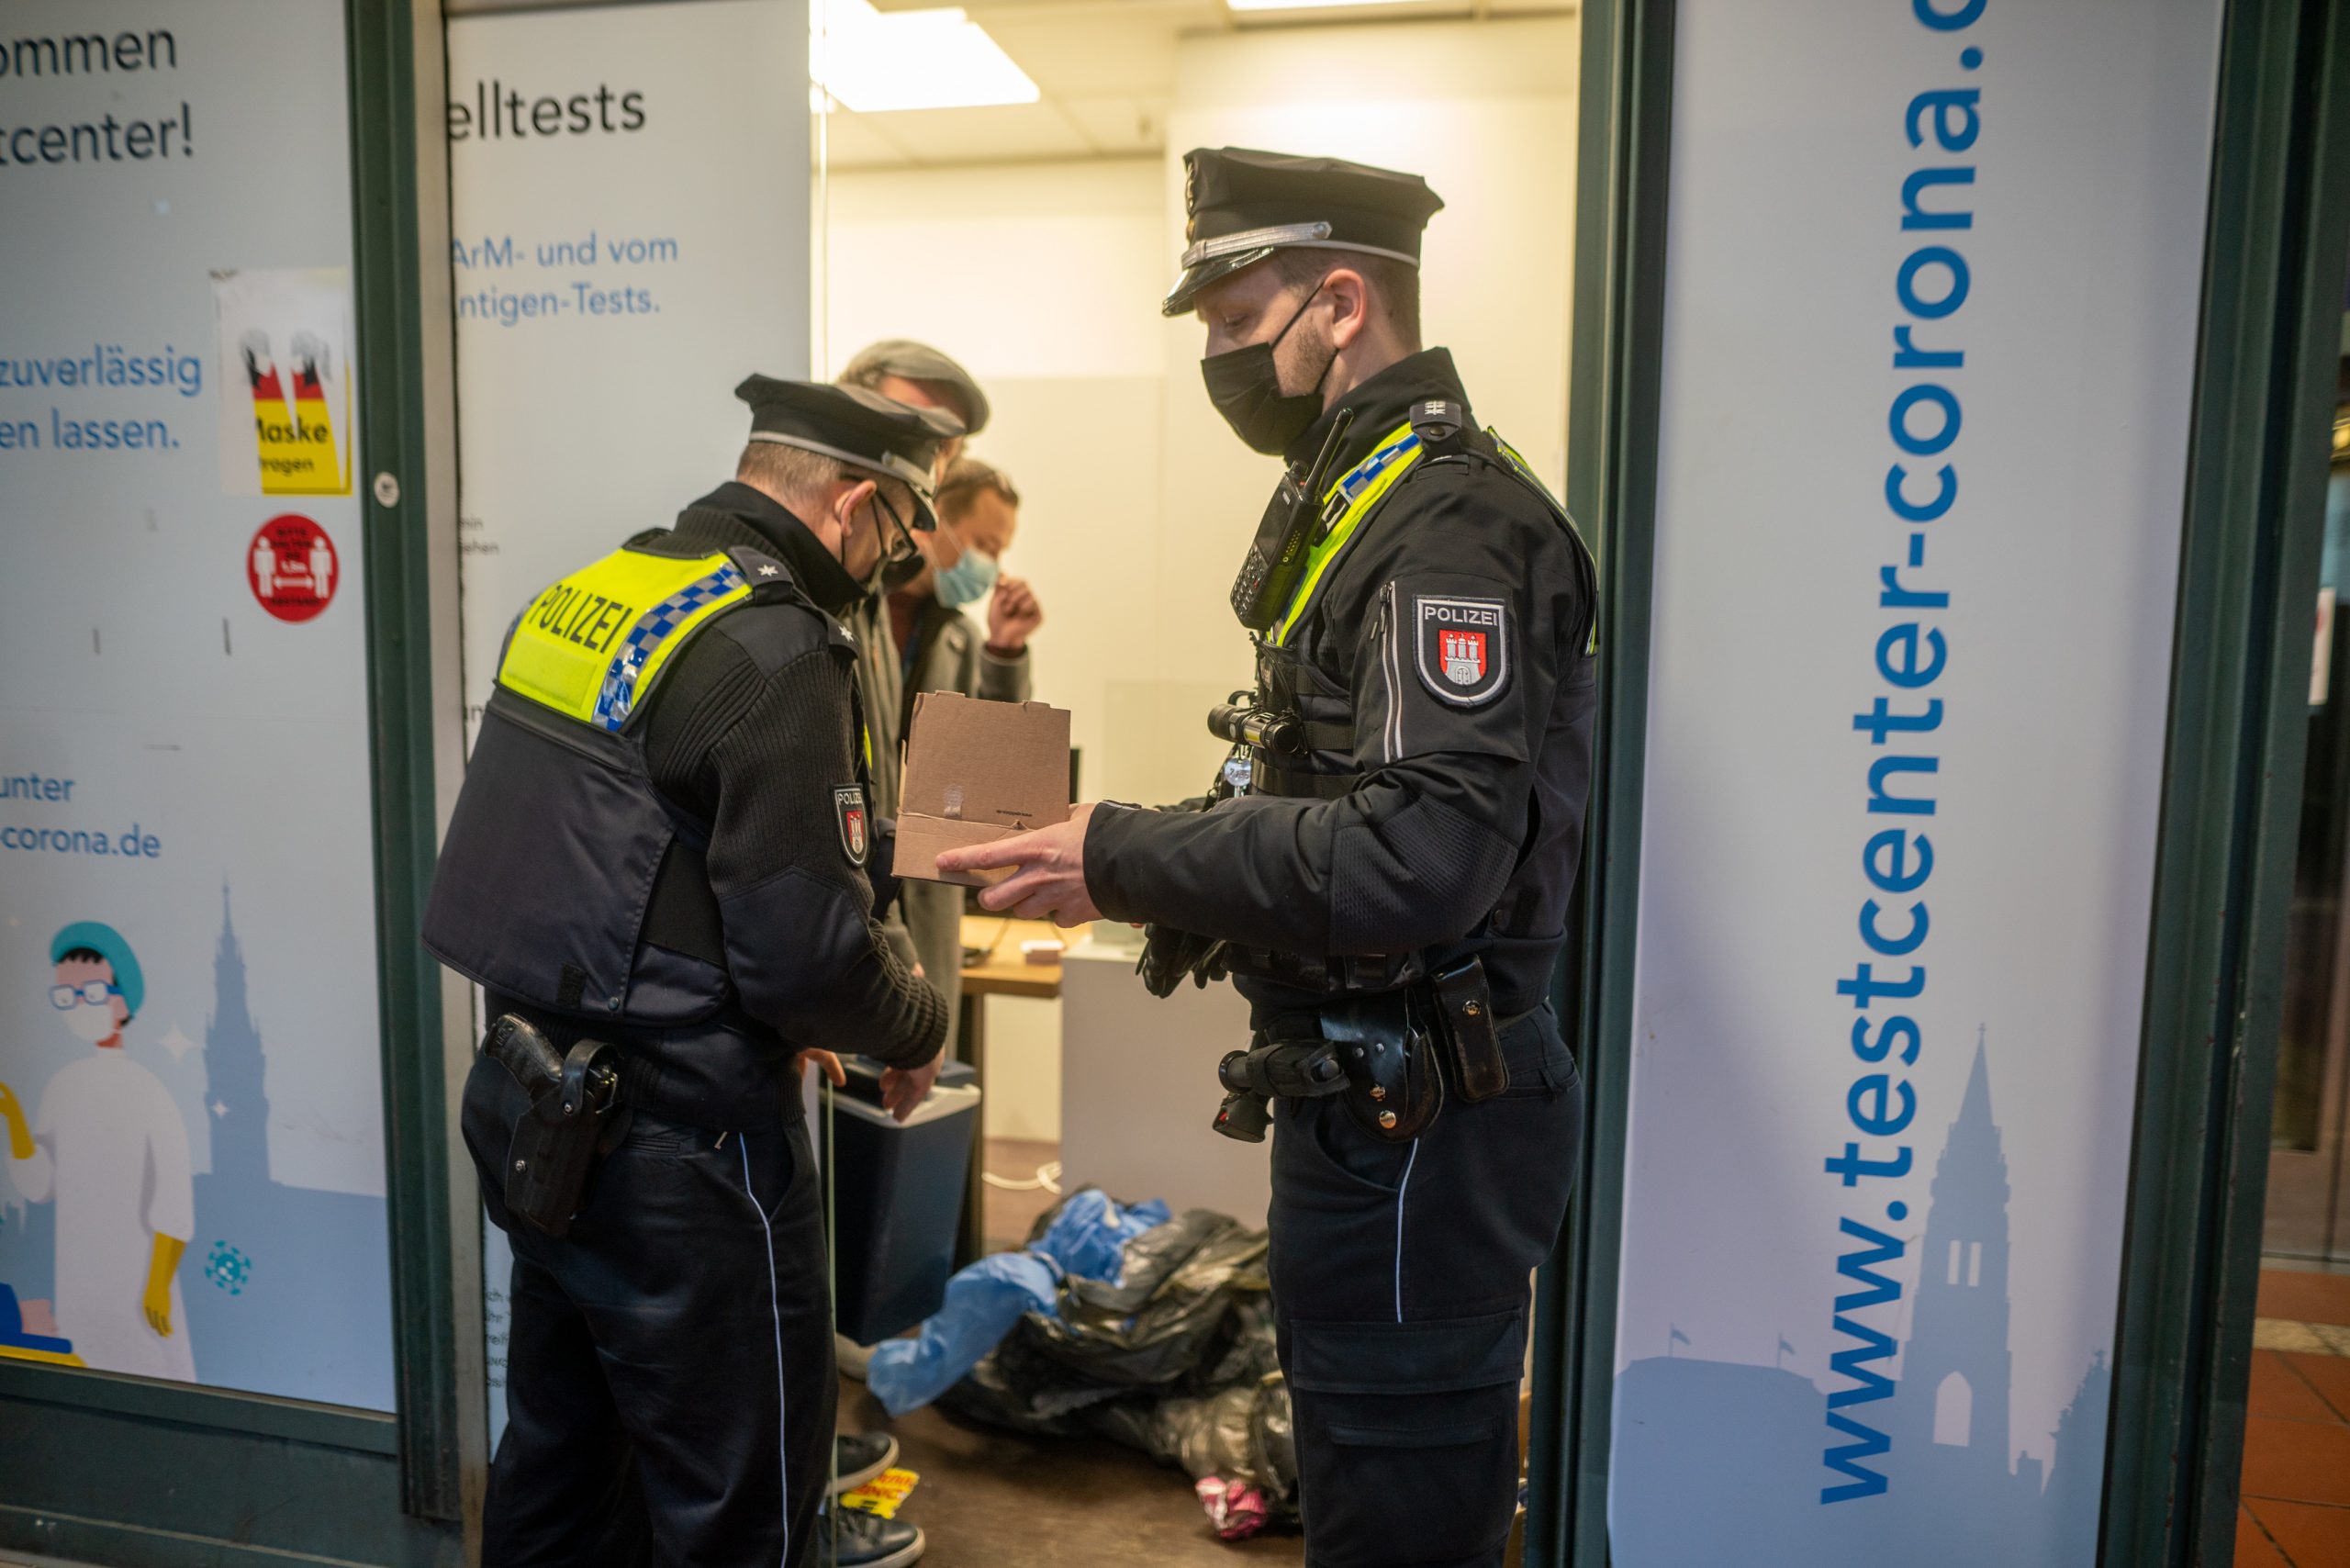 Polizei und Gesundheitsamt kontrollierten das Impfzentrum in der Wandelhalle in Hamburg.